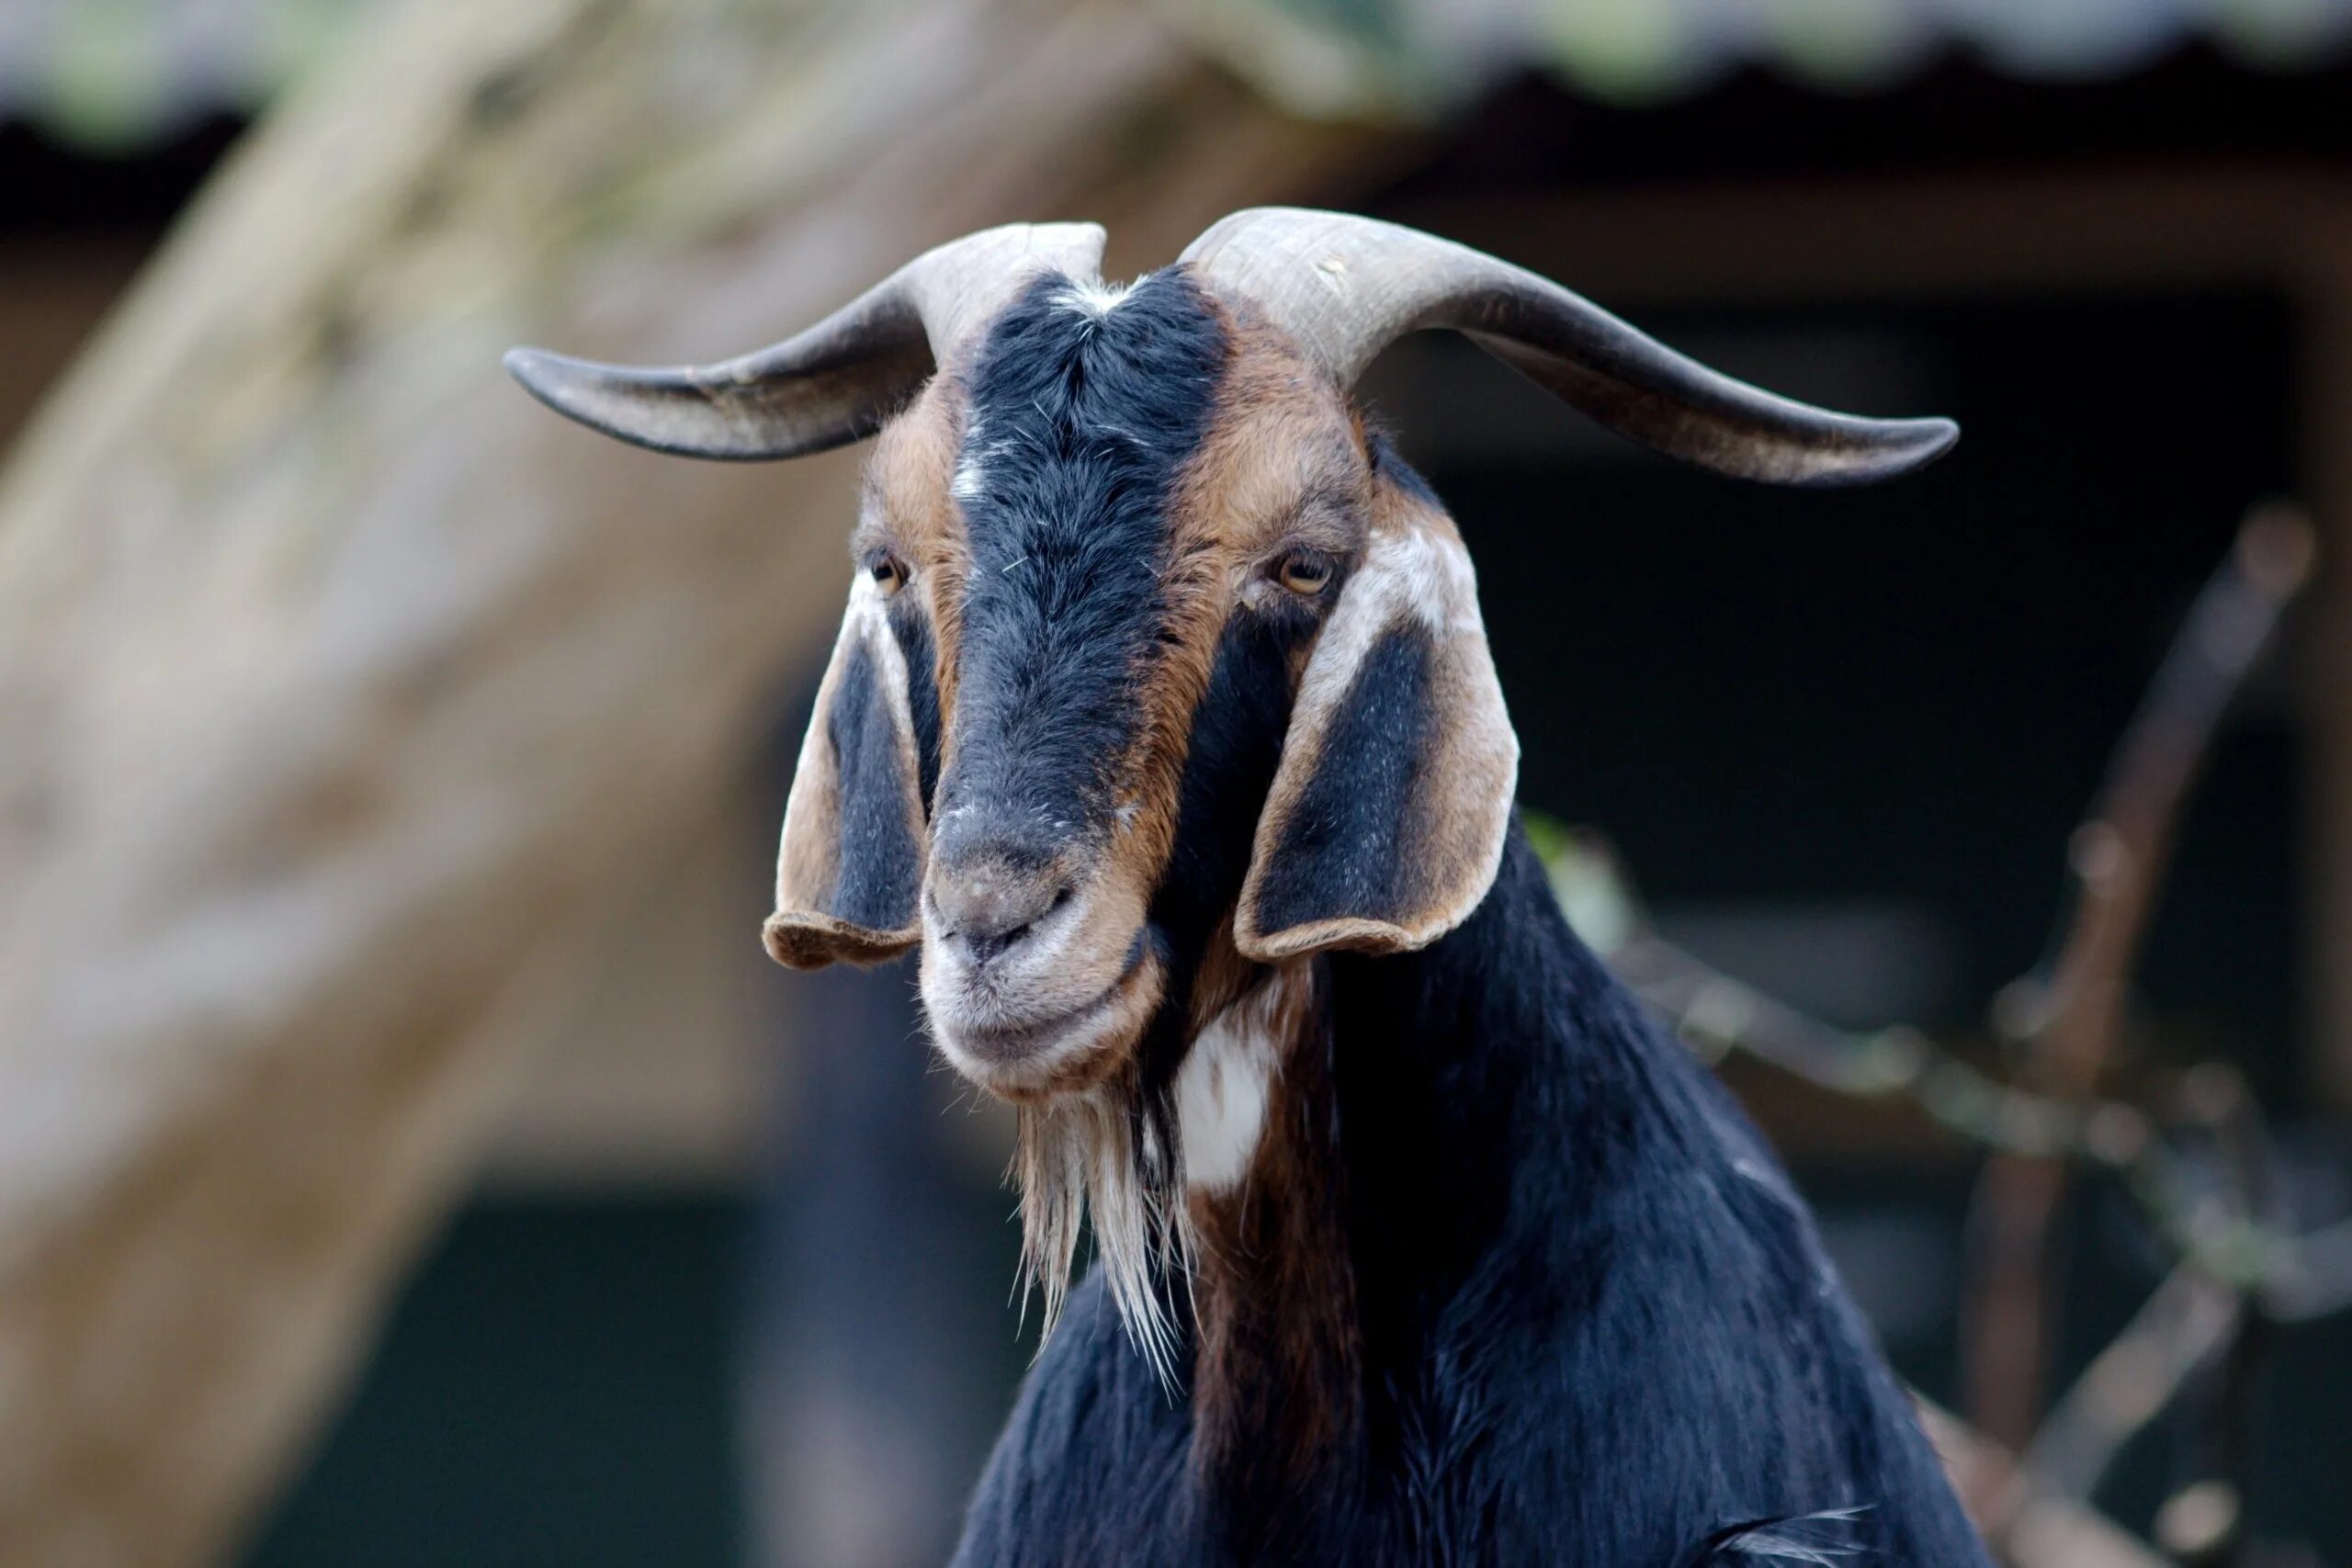 Ушами порода козы. Длинноухие козы порода. Коза с длинными ушами порода нубийская. Длинноухие овцы породы Долан. Коза Шами с длинными ушами.